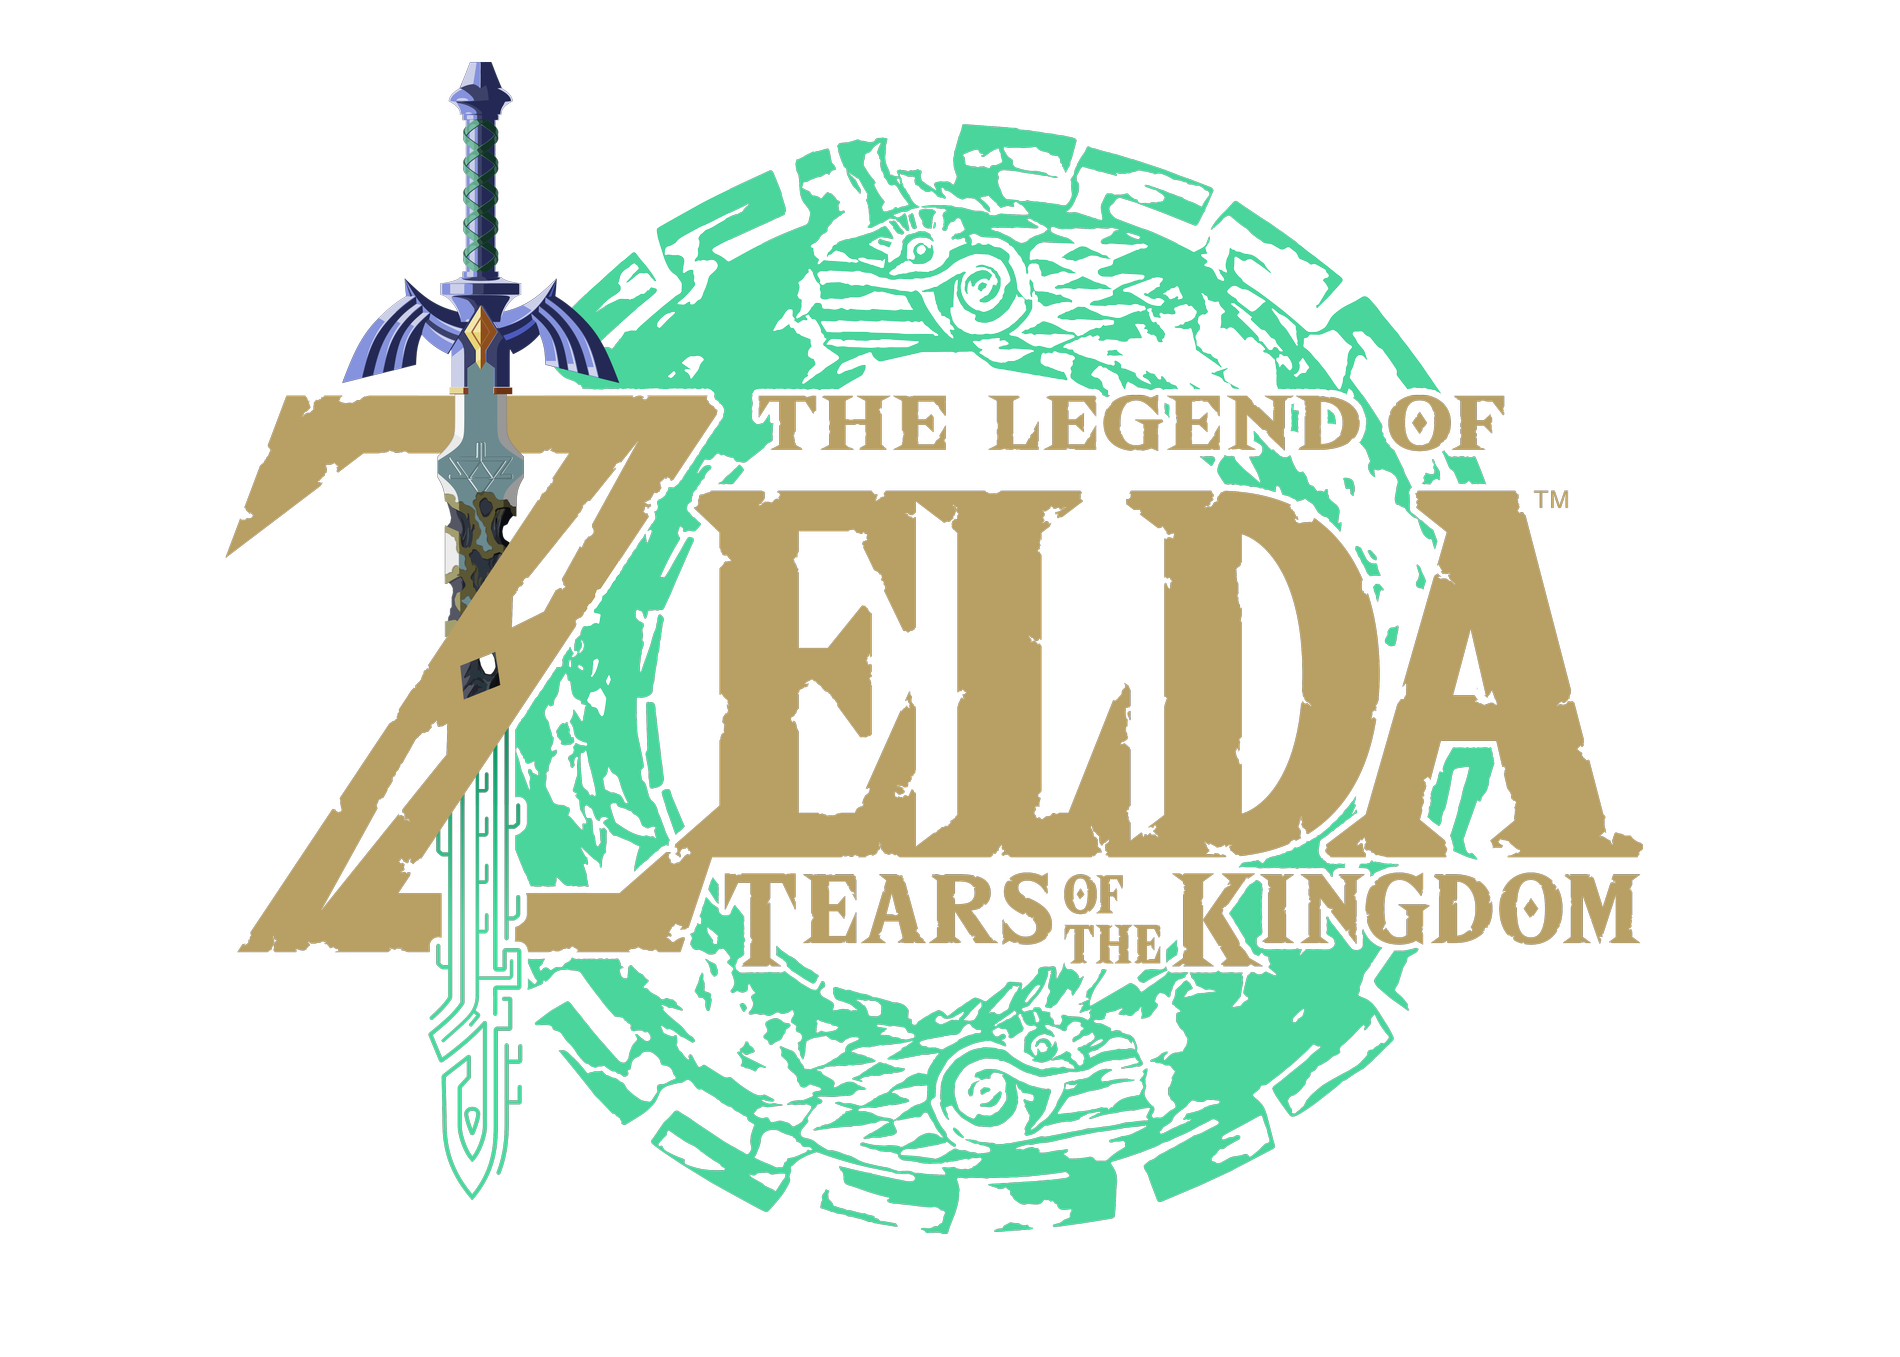 ”The Legend of Zelda”.